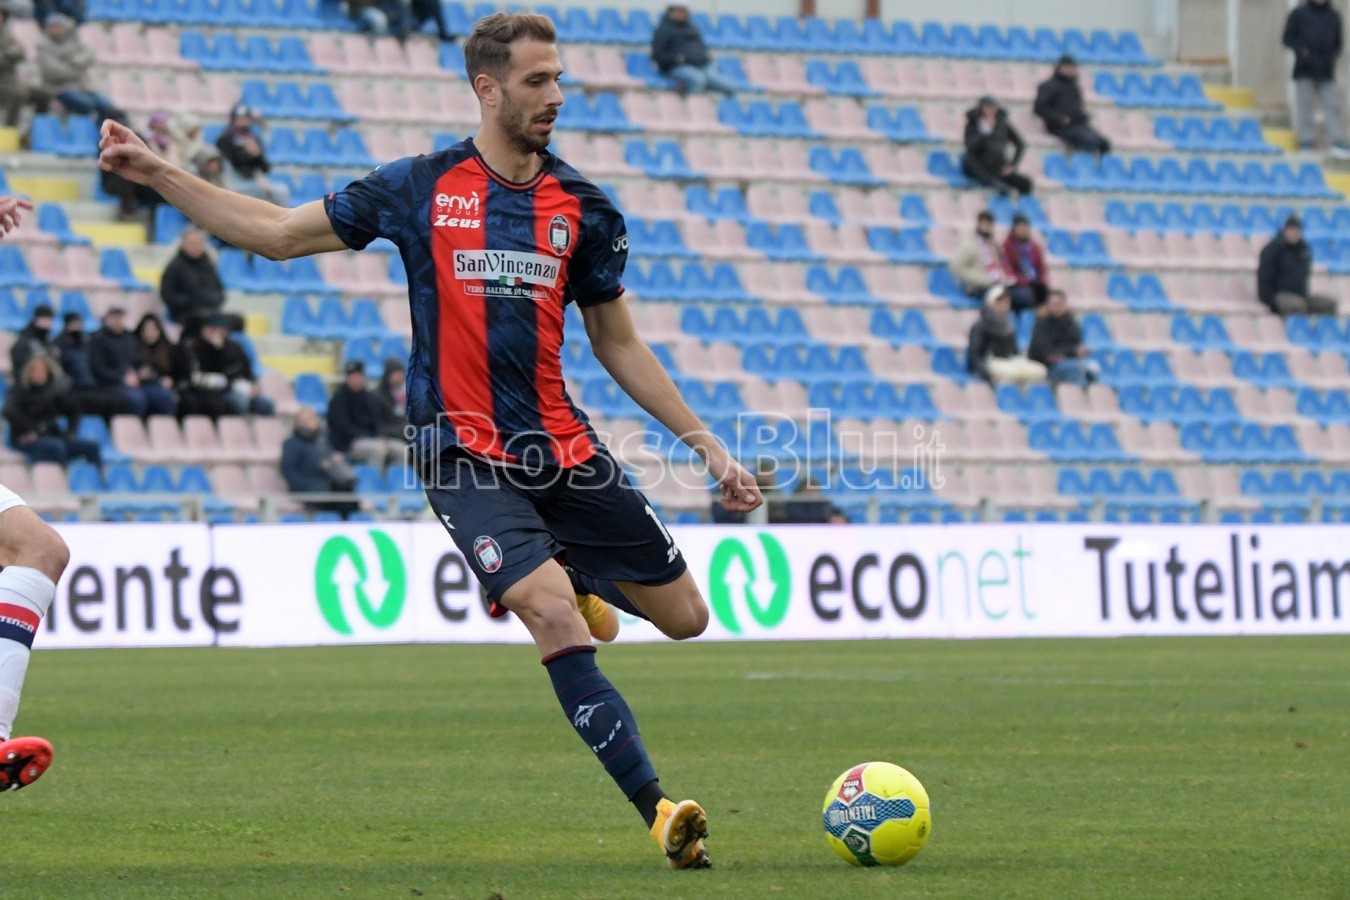 Crotone vs Potenza 0-0 – Serie C 2022-2023 – Rosito Andrea – (29 1 2023)  – Cernigoi Iacopo